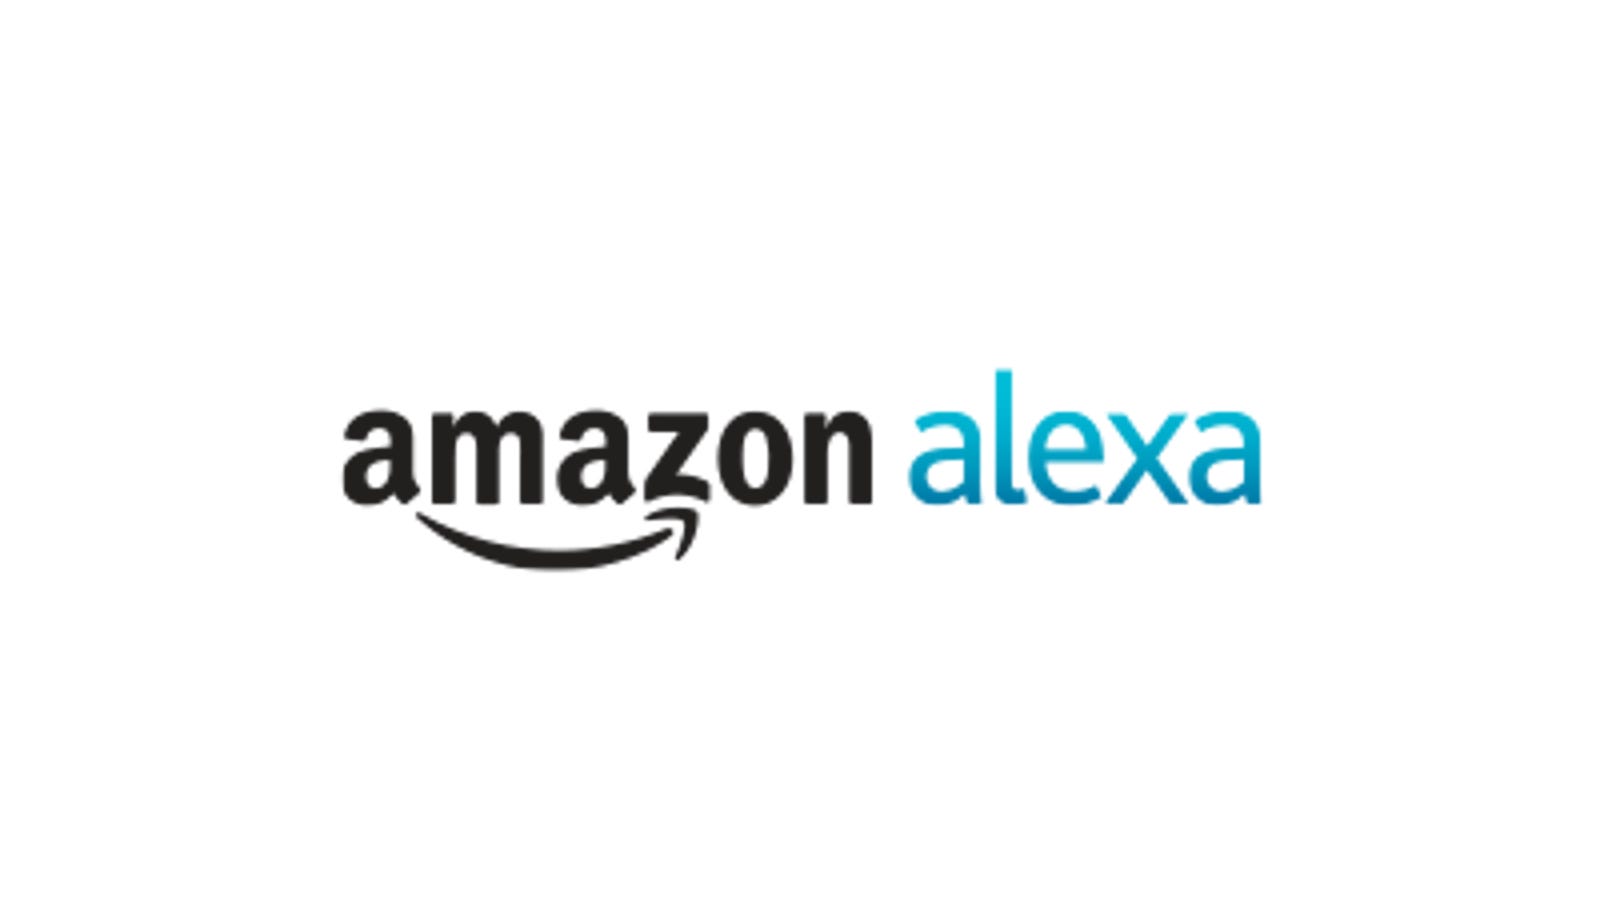 Алекса амазон. Амазон Алекса. Alexa от Amazon лого. Amazon Alexa голосовой помощник. Логотип Amazon Alexa умный дом.